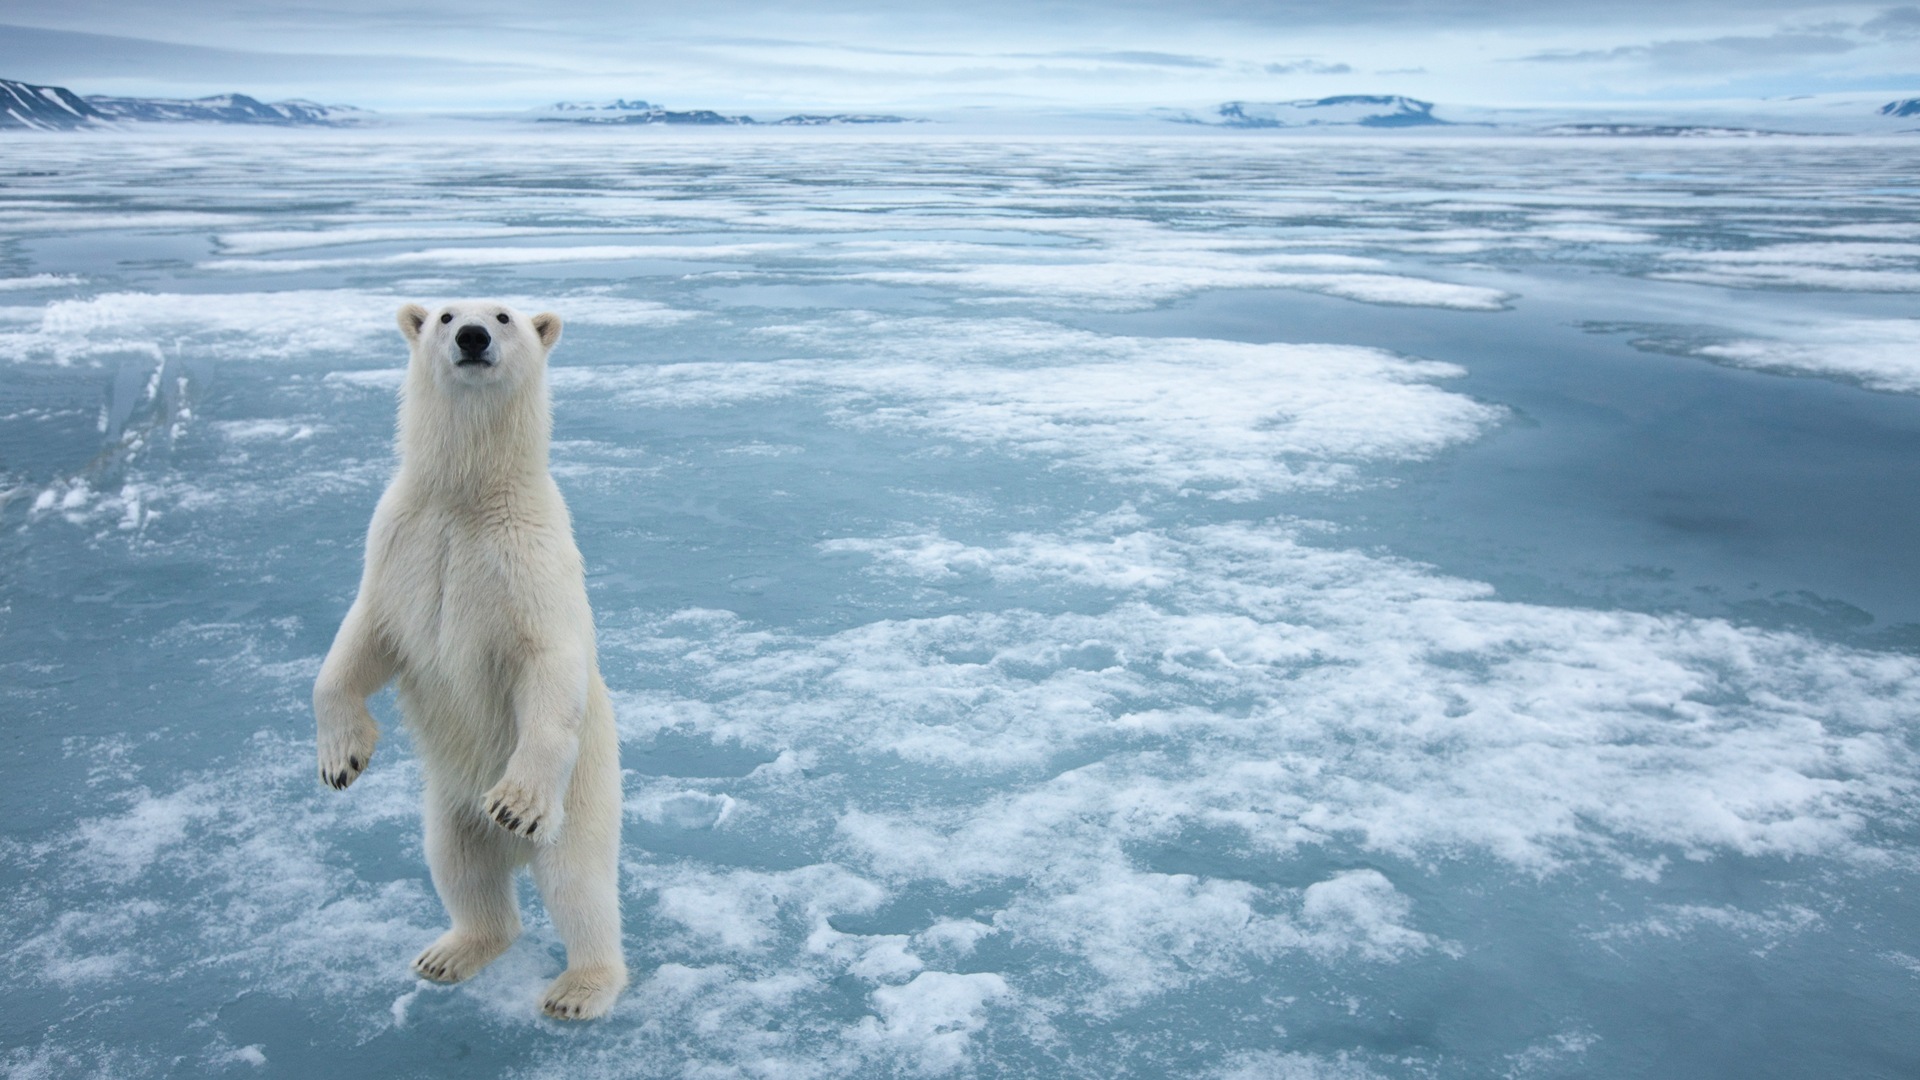 Windows 8: Fondos del Ártico, el paisaje ecológico, ártico animales #6 - 1920x1080